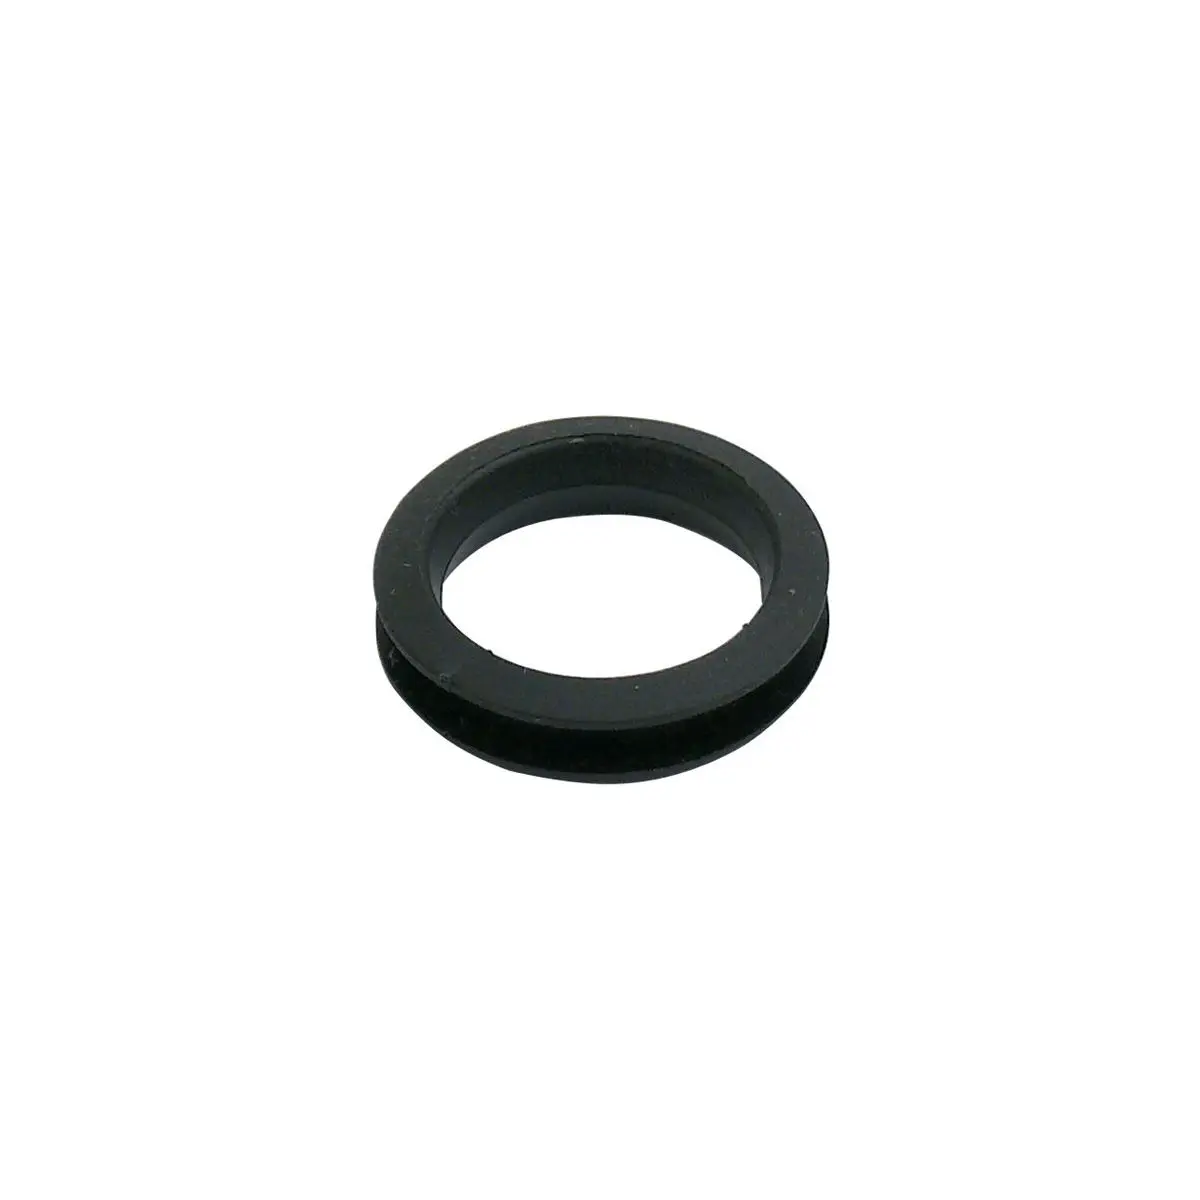 Gumový úchytný krúžok, 22 mm pre sklenené kryty pre sporáky Dometic, Splen, kombinácie - EK 2000 a séria H